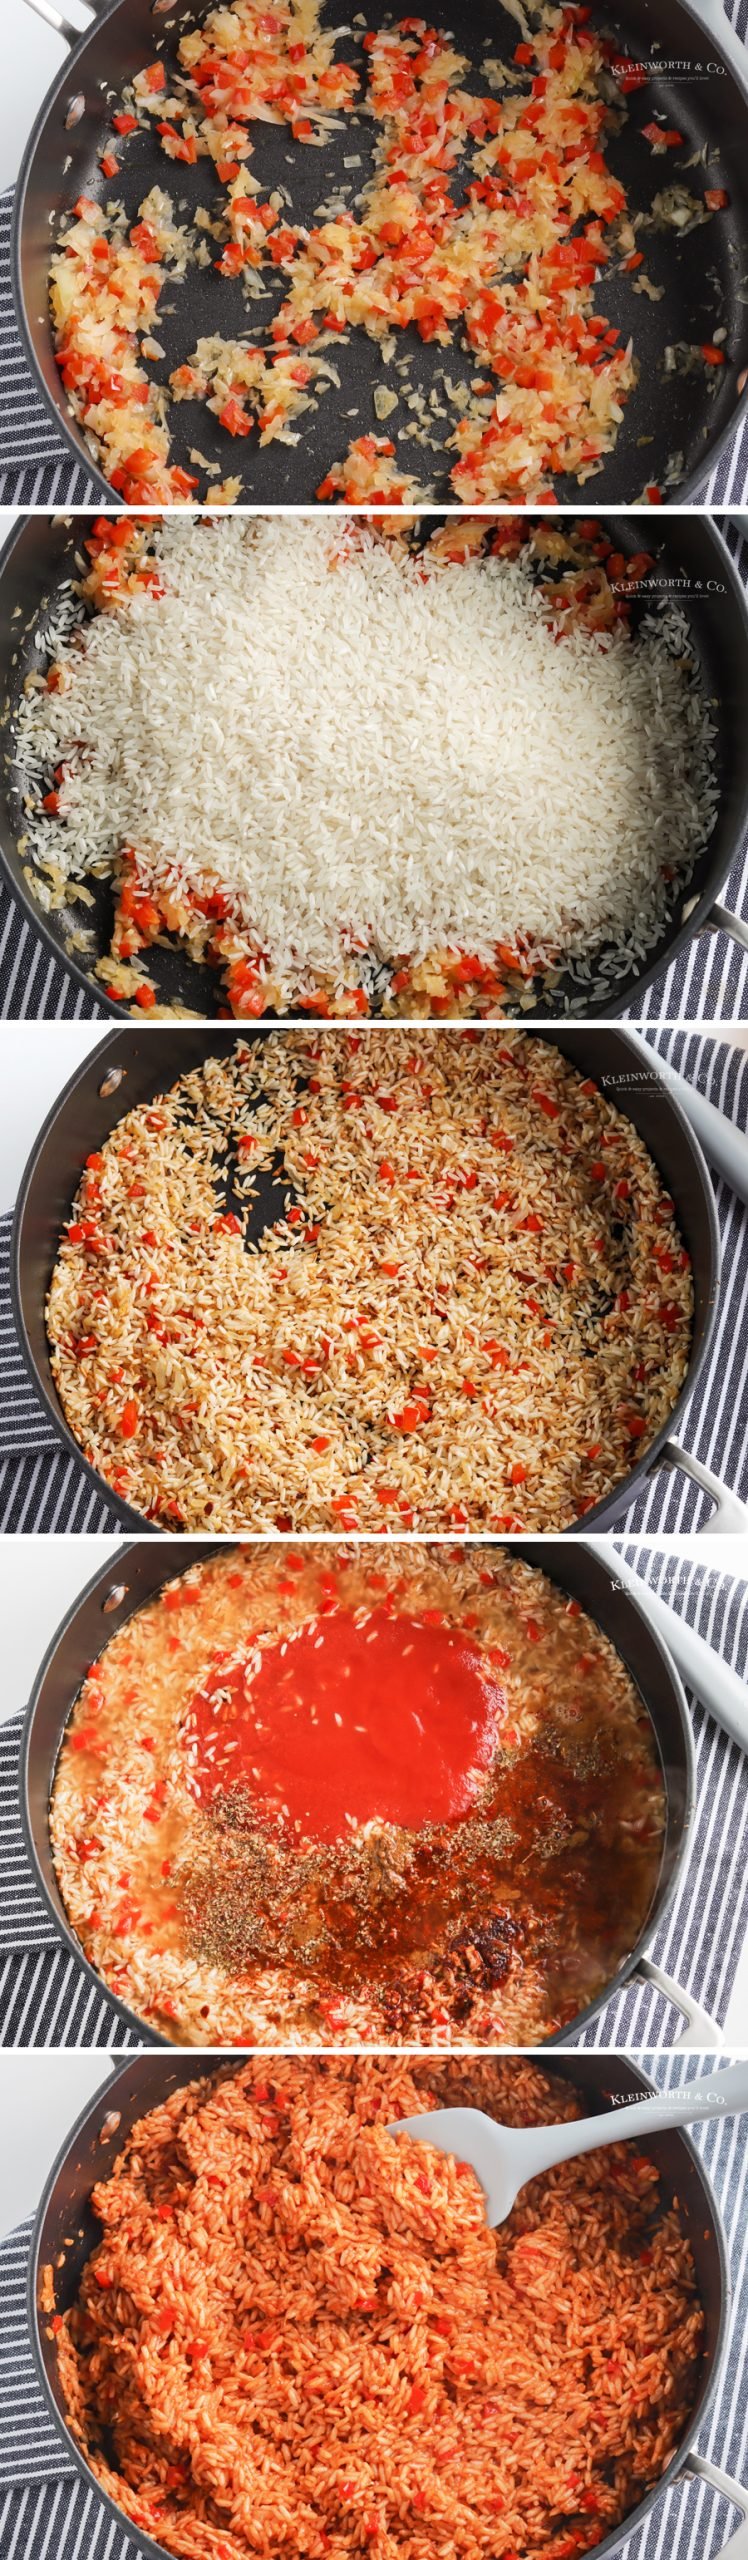 how to make spanish rice